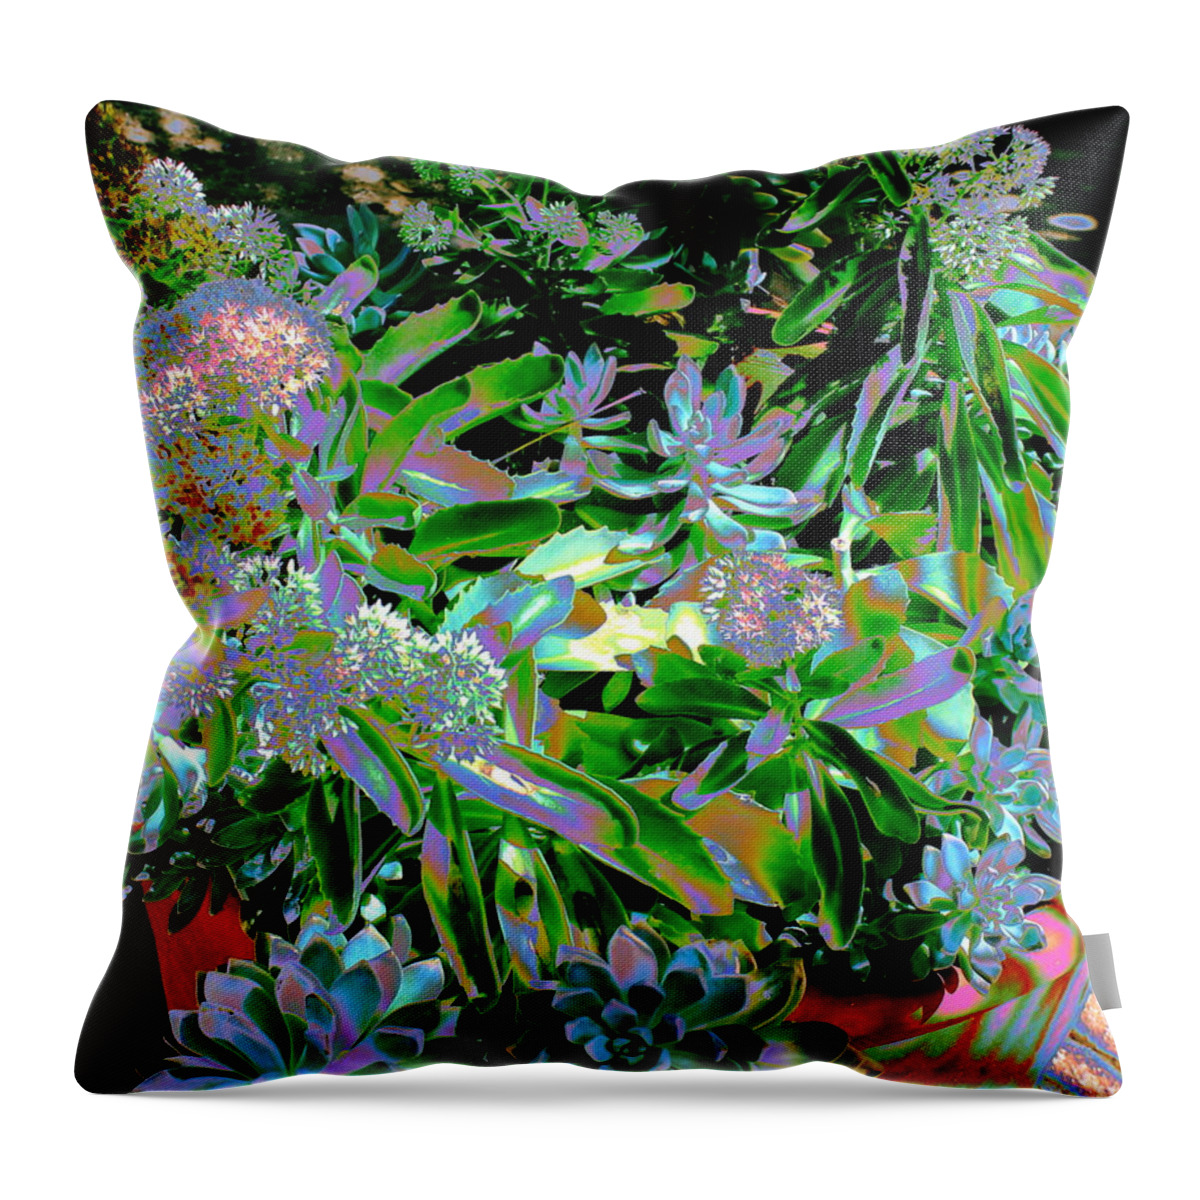 Plants Throw Pillow featuring the photograph Succulent Pot by M Diane Bonaparte